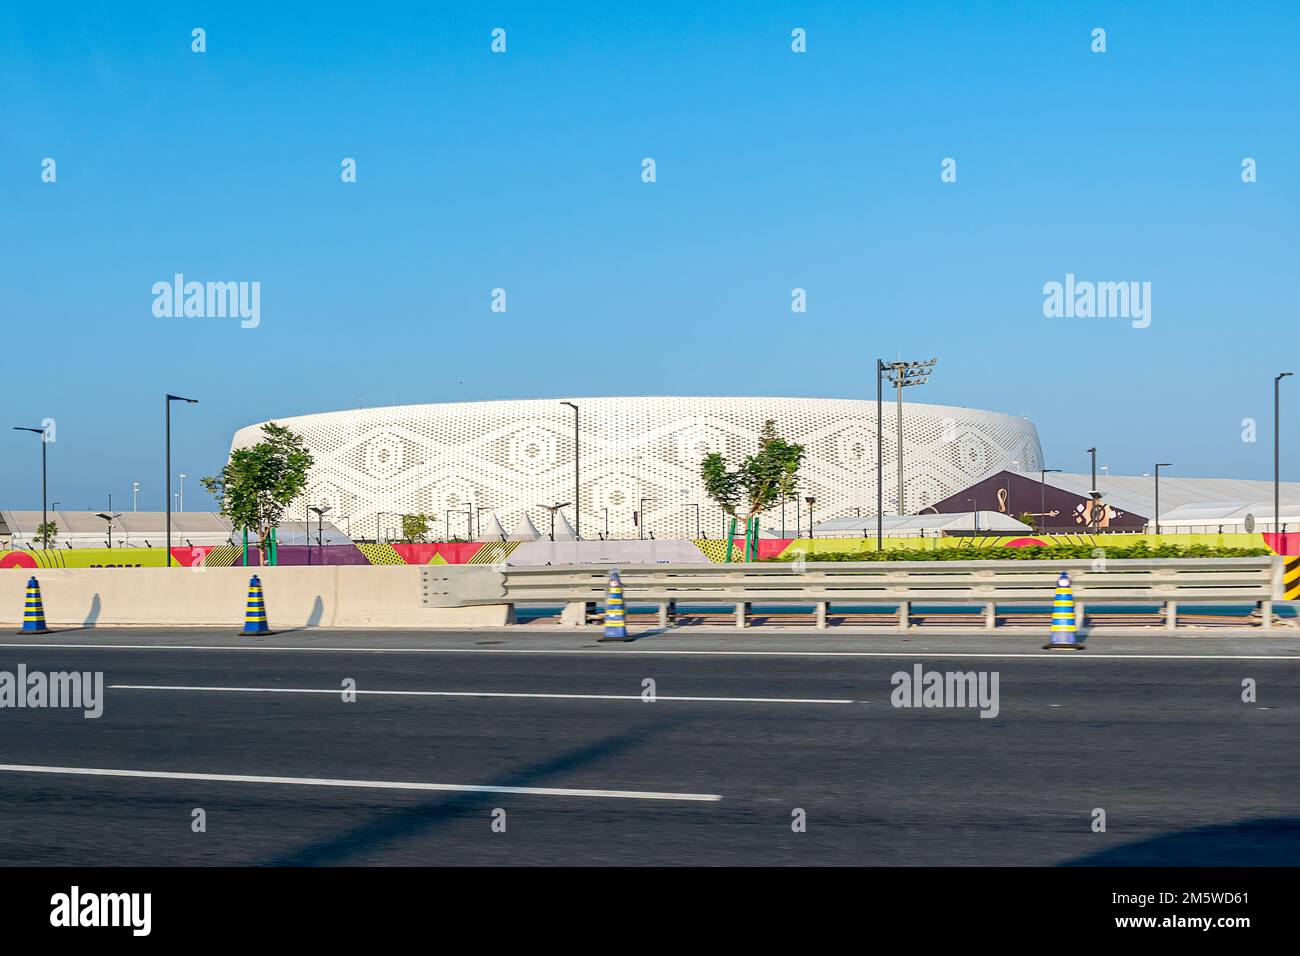 Una vista generale dello stadio al Thumama, uno dei luoghi in cui si svolge il torneo di calcio della Coppa del mondo FIFA Qatar 2022. Foto Stock